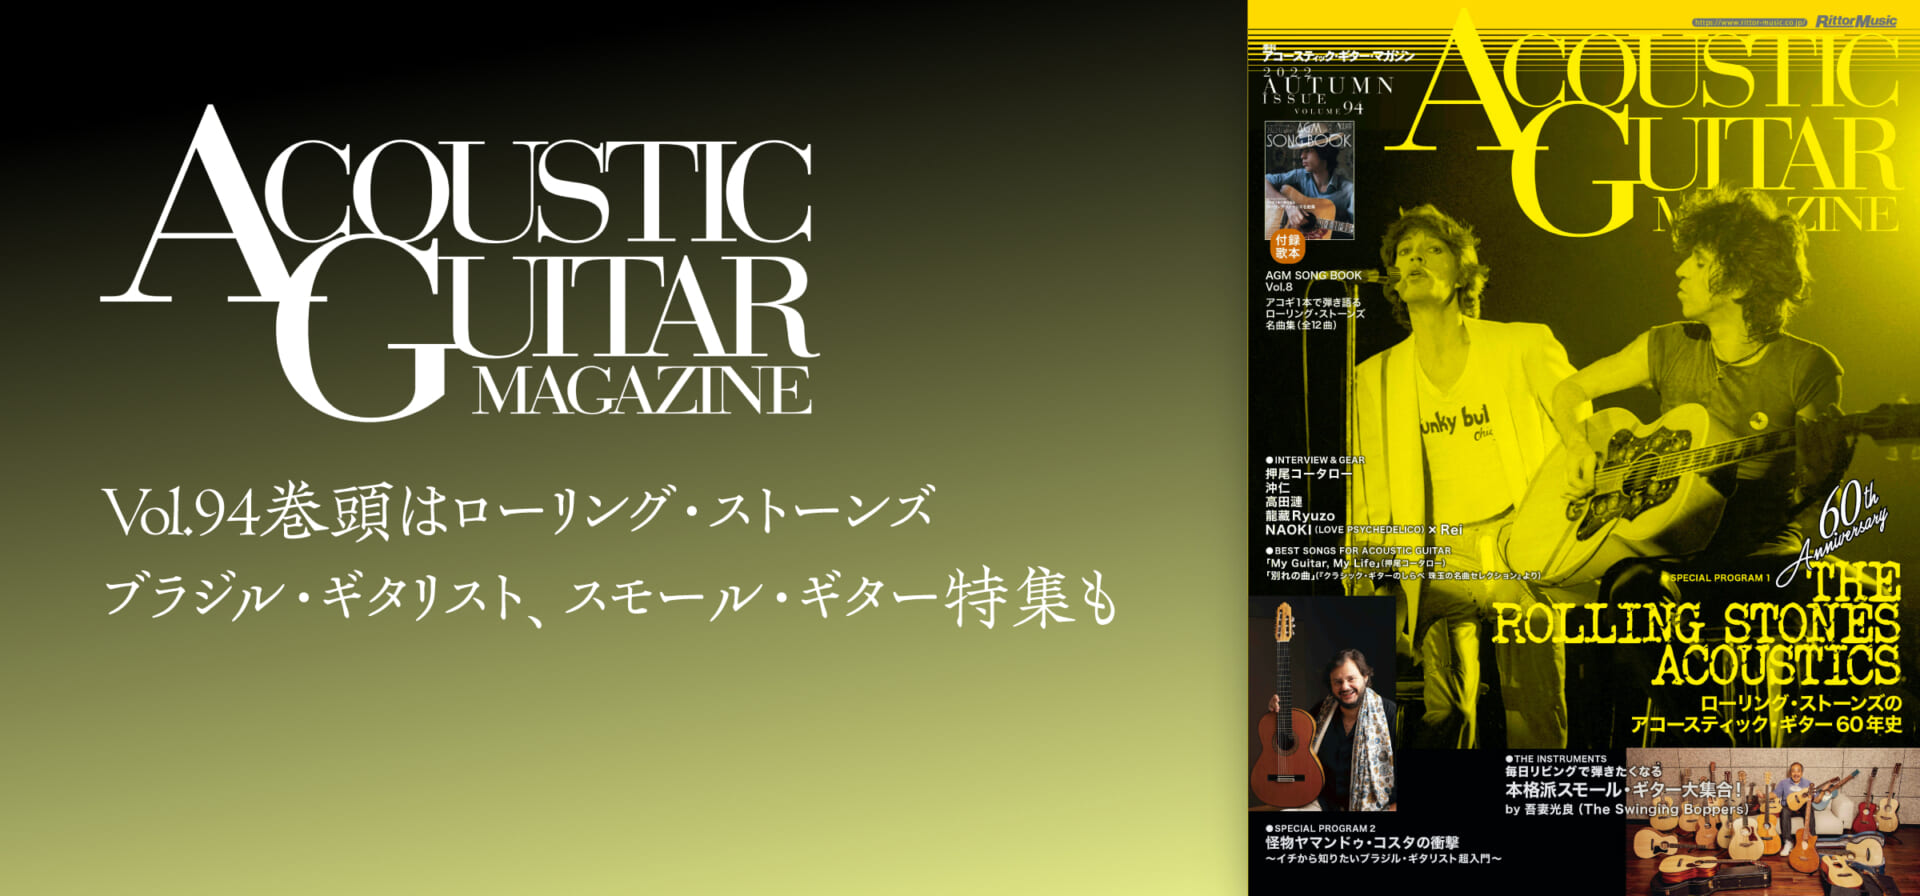 アコースティック・ギター・マガジン最新号特集はローリング・ストーンズ、ブラジル・ギタリスト